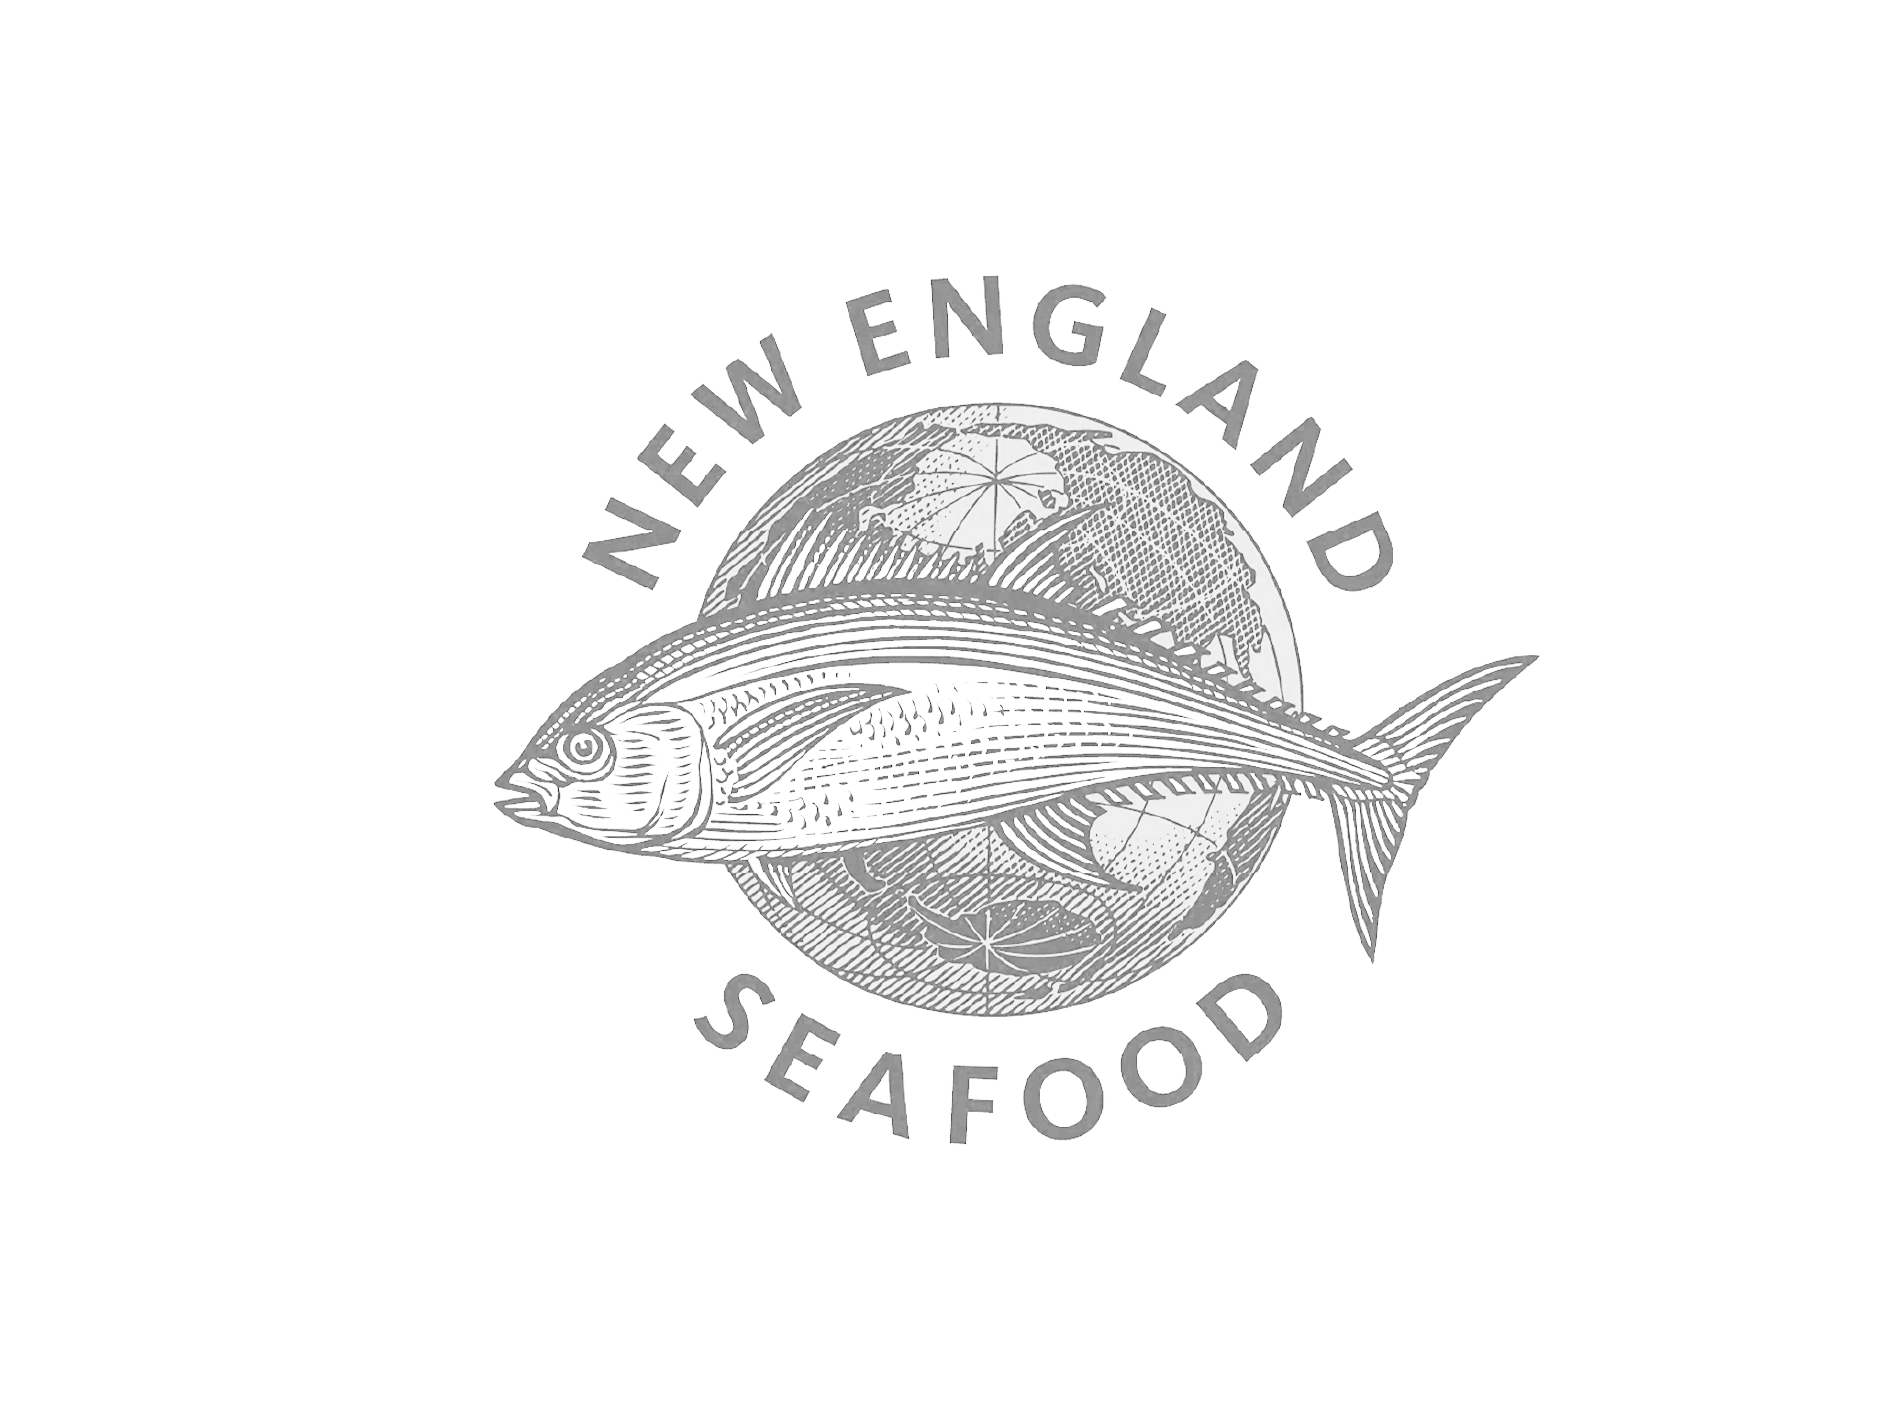 New england seafood grey